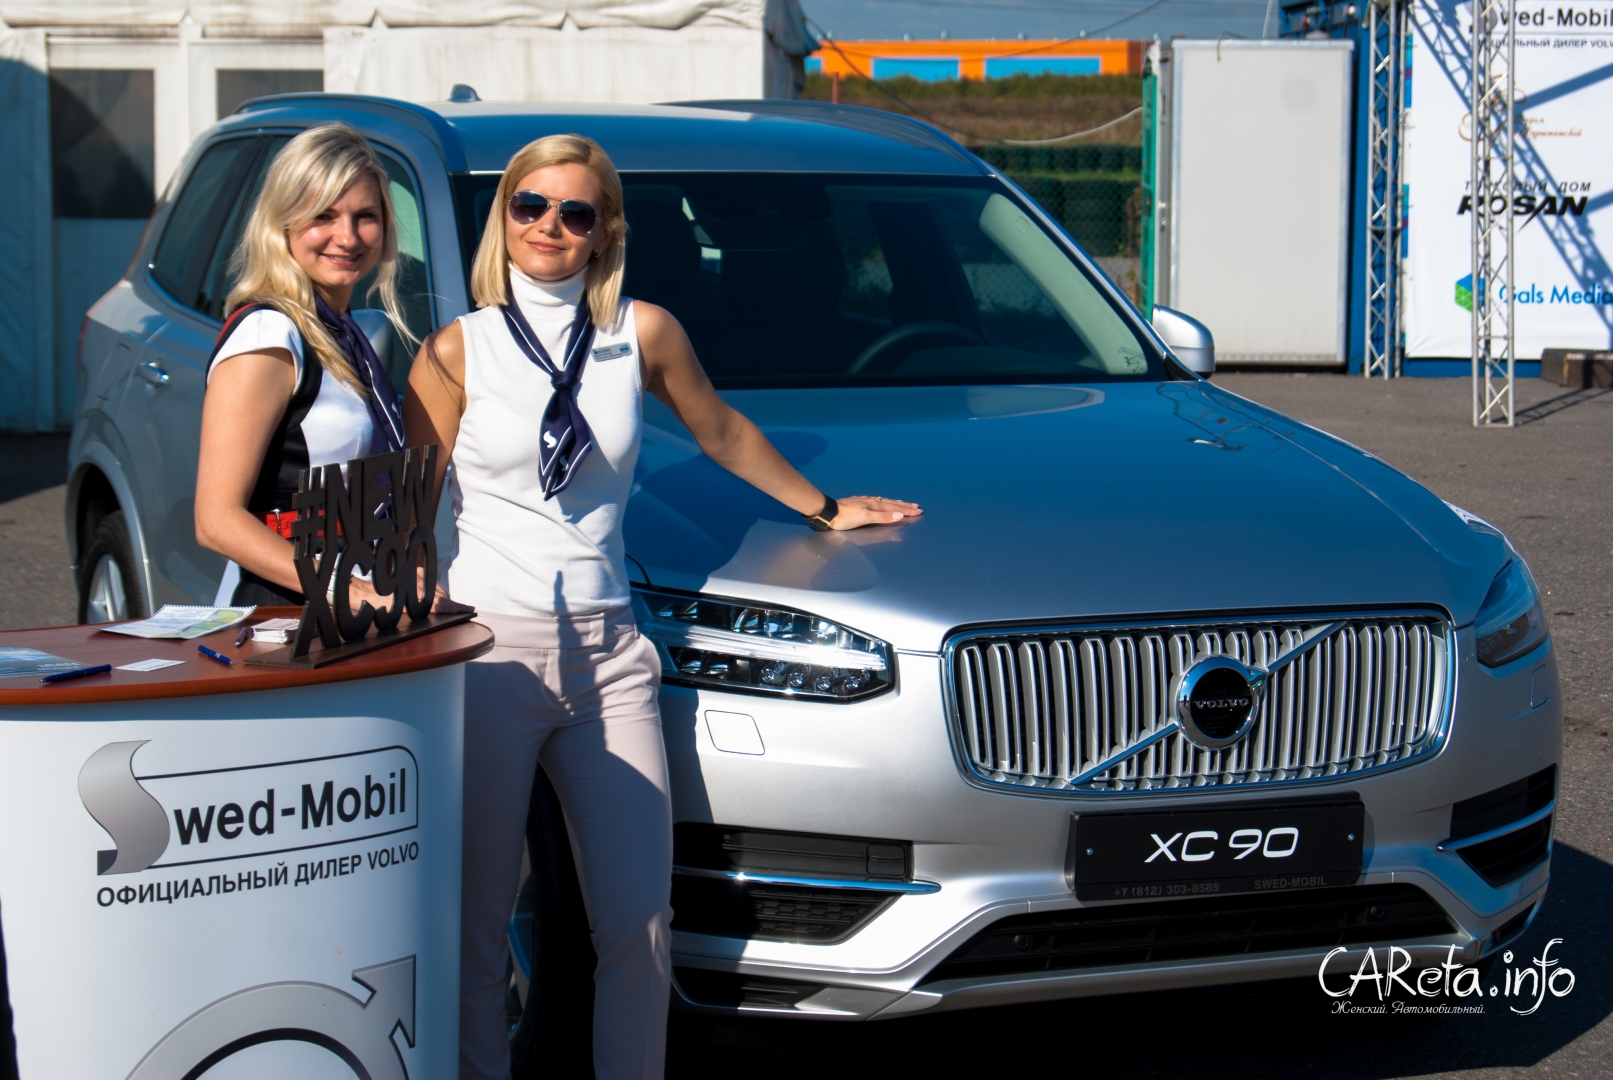 День Volvo вместе с Swed-Mobil